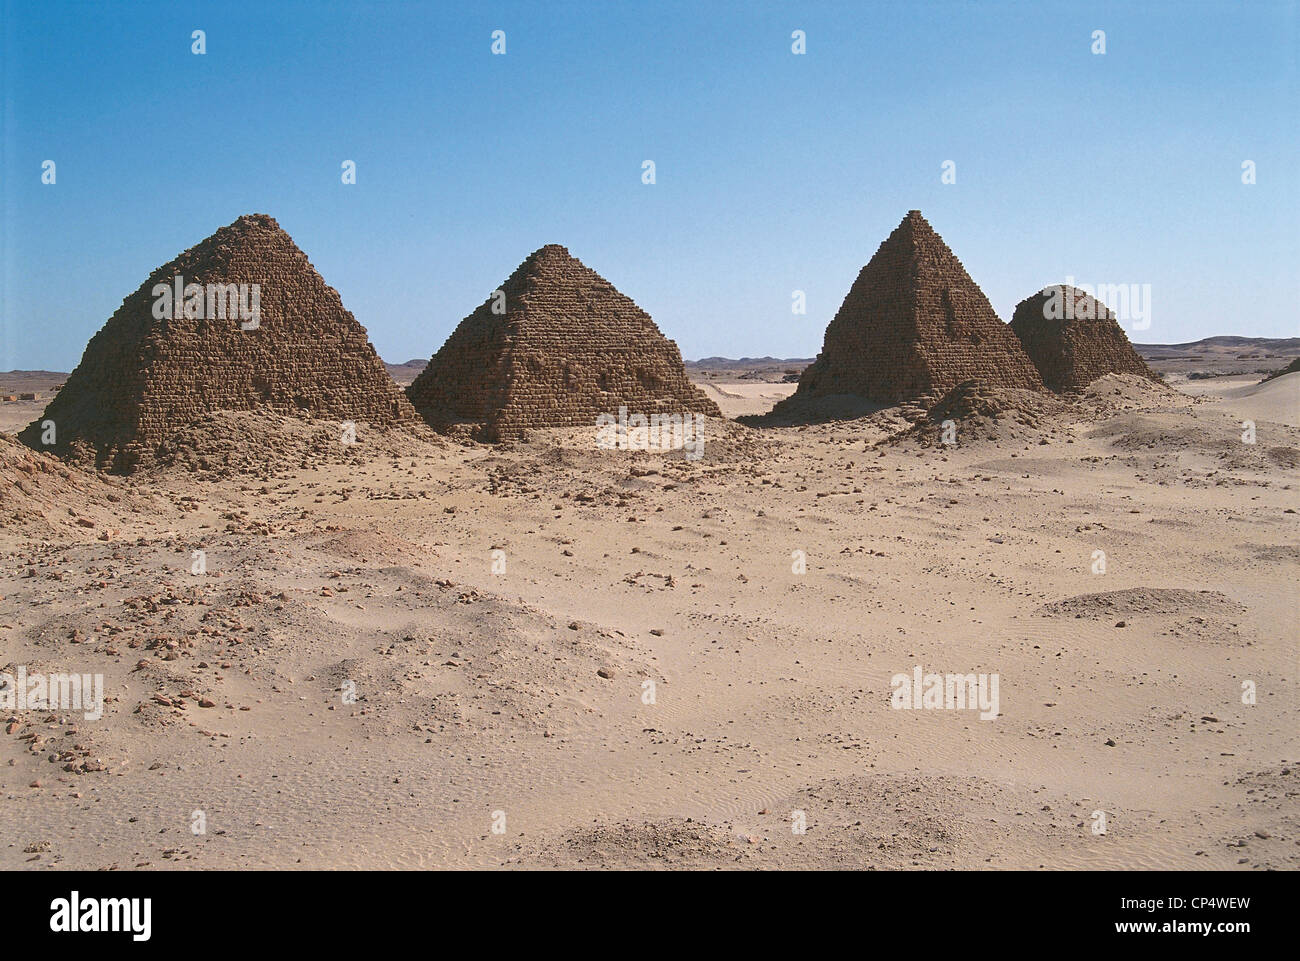 Sudan - Nubia - Nuri. Pyramids of the Nubian pharaohs blacks, VIII-VII century BC (World Heritage Site by UNESCO, 2003). Stock Photo